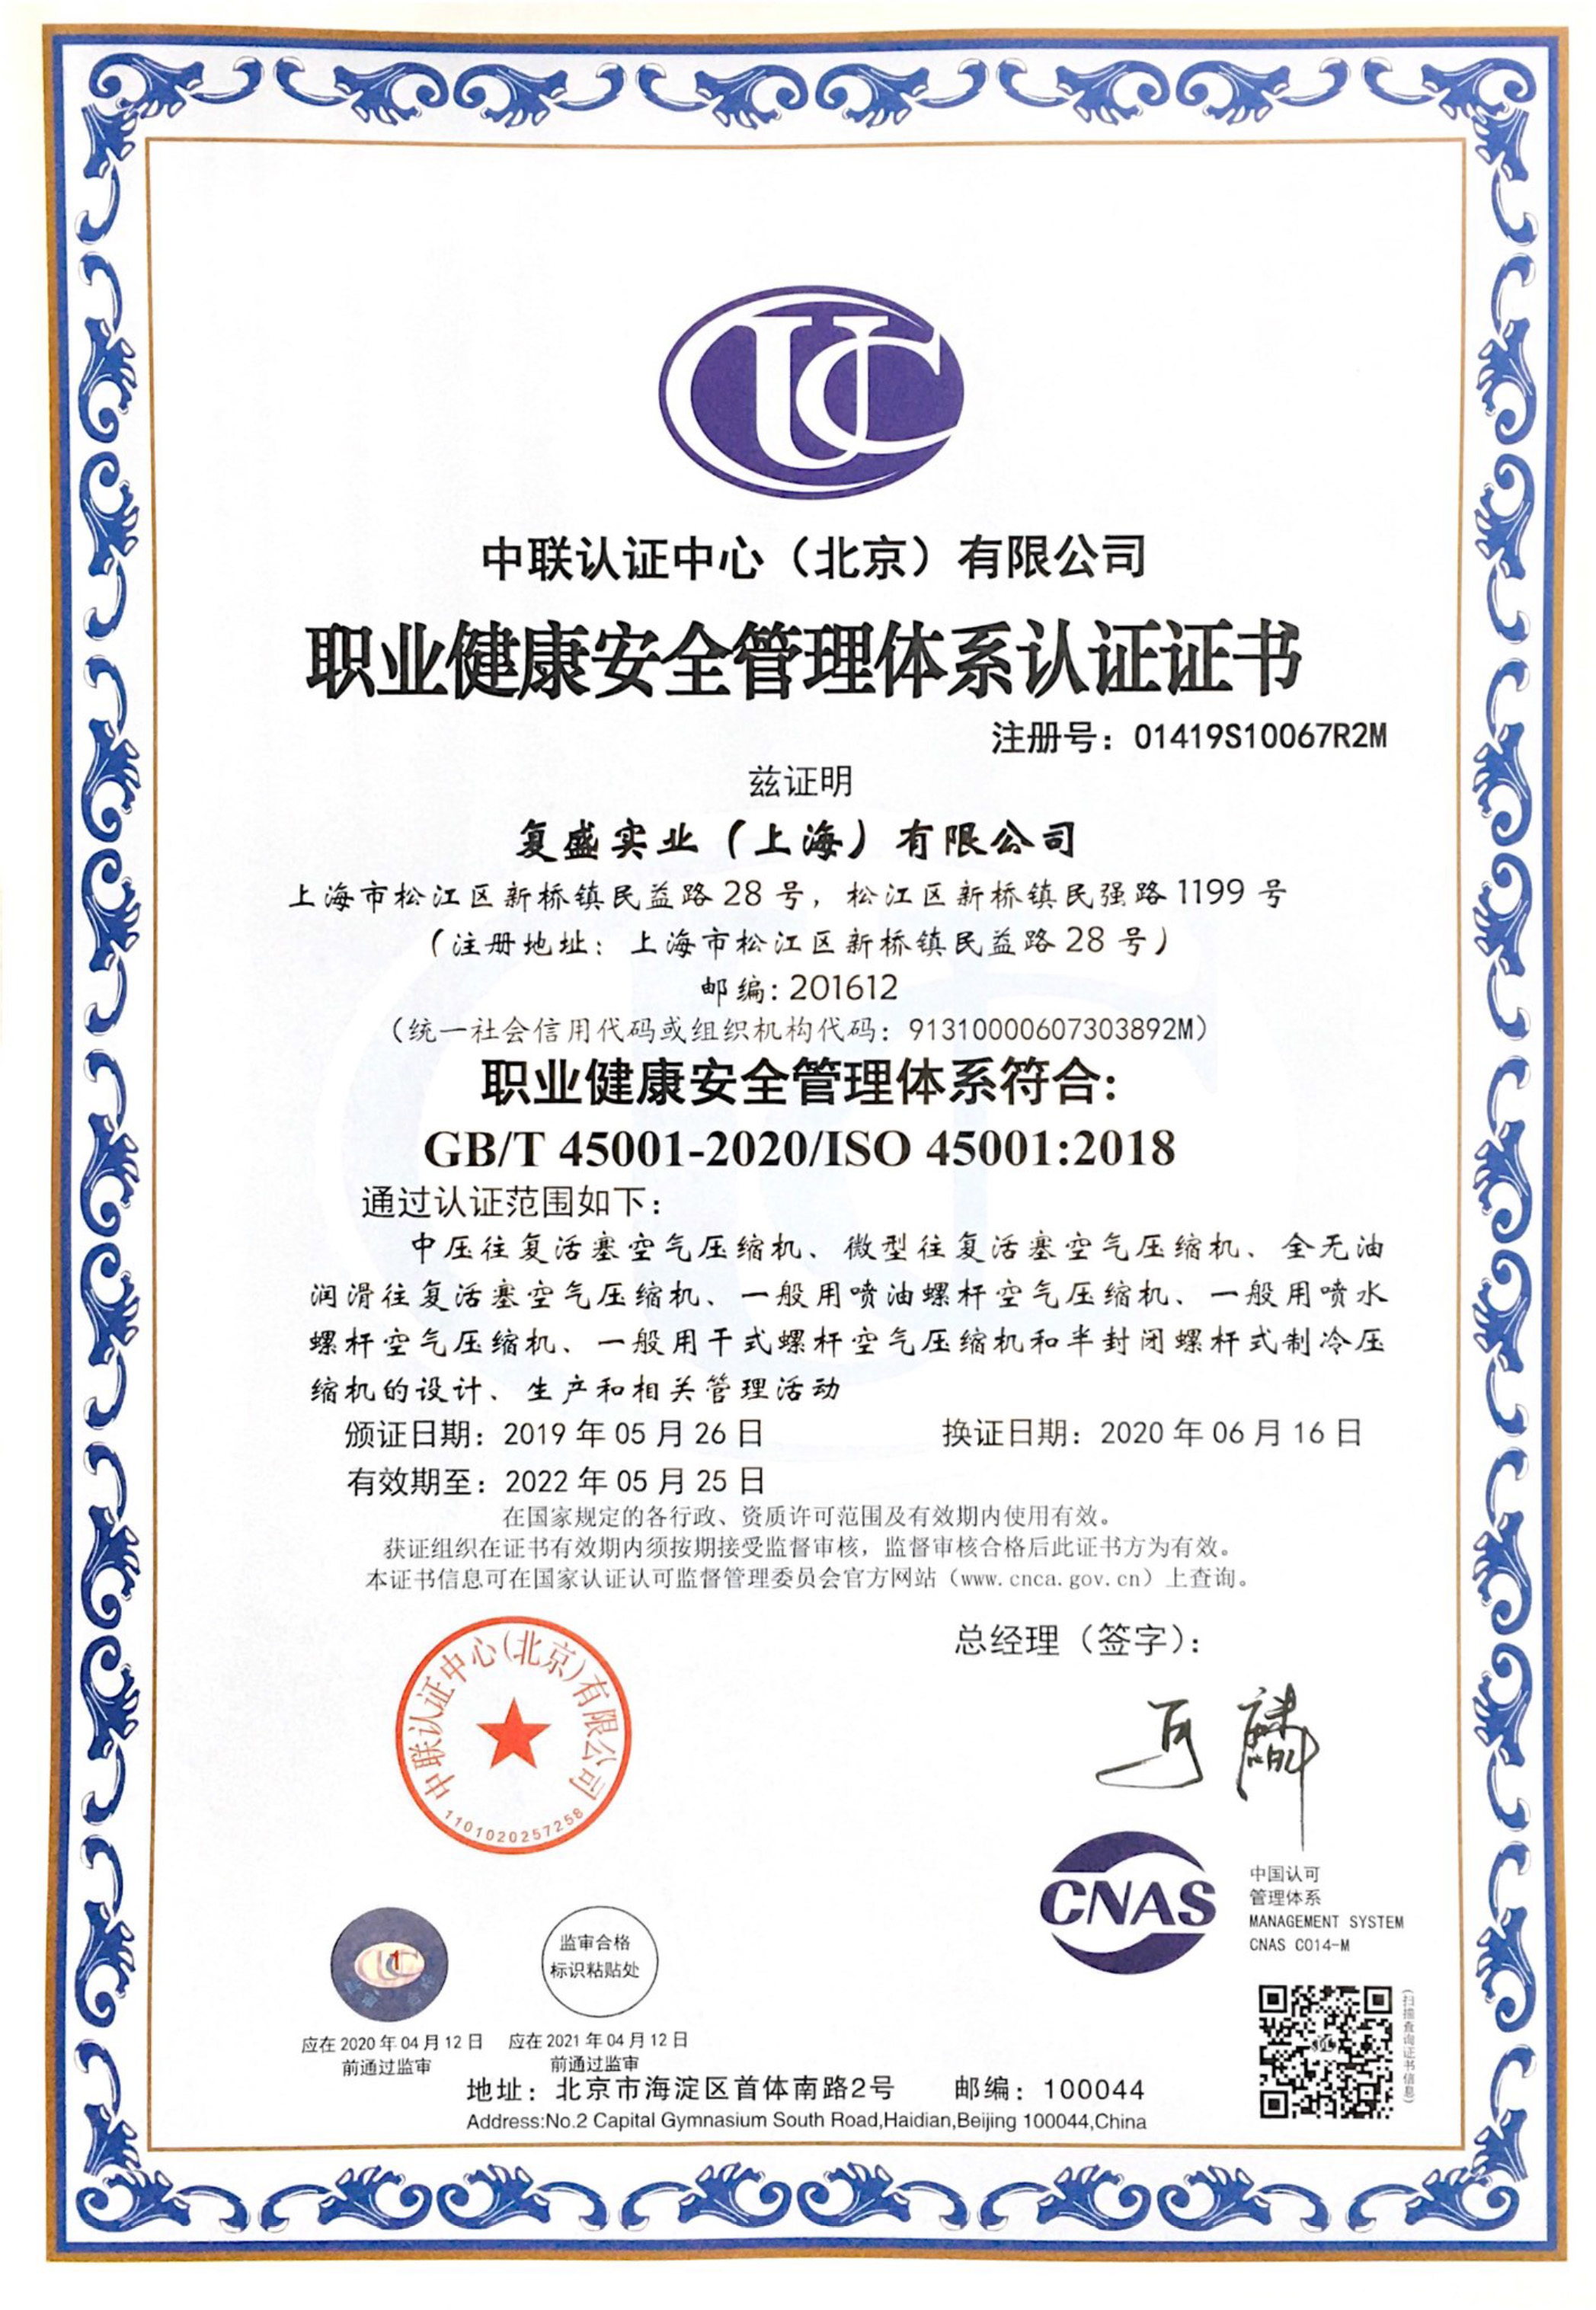 上海_职业健康安全管理体系认证证书_中文202205.jpg